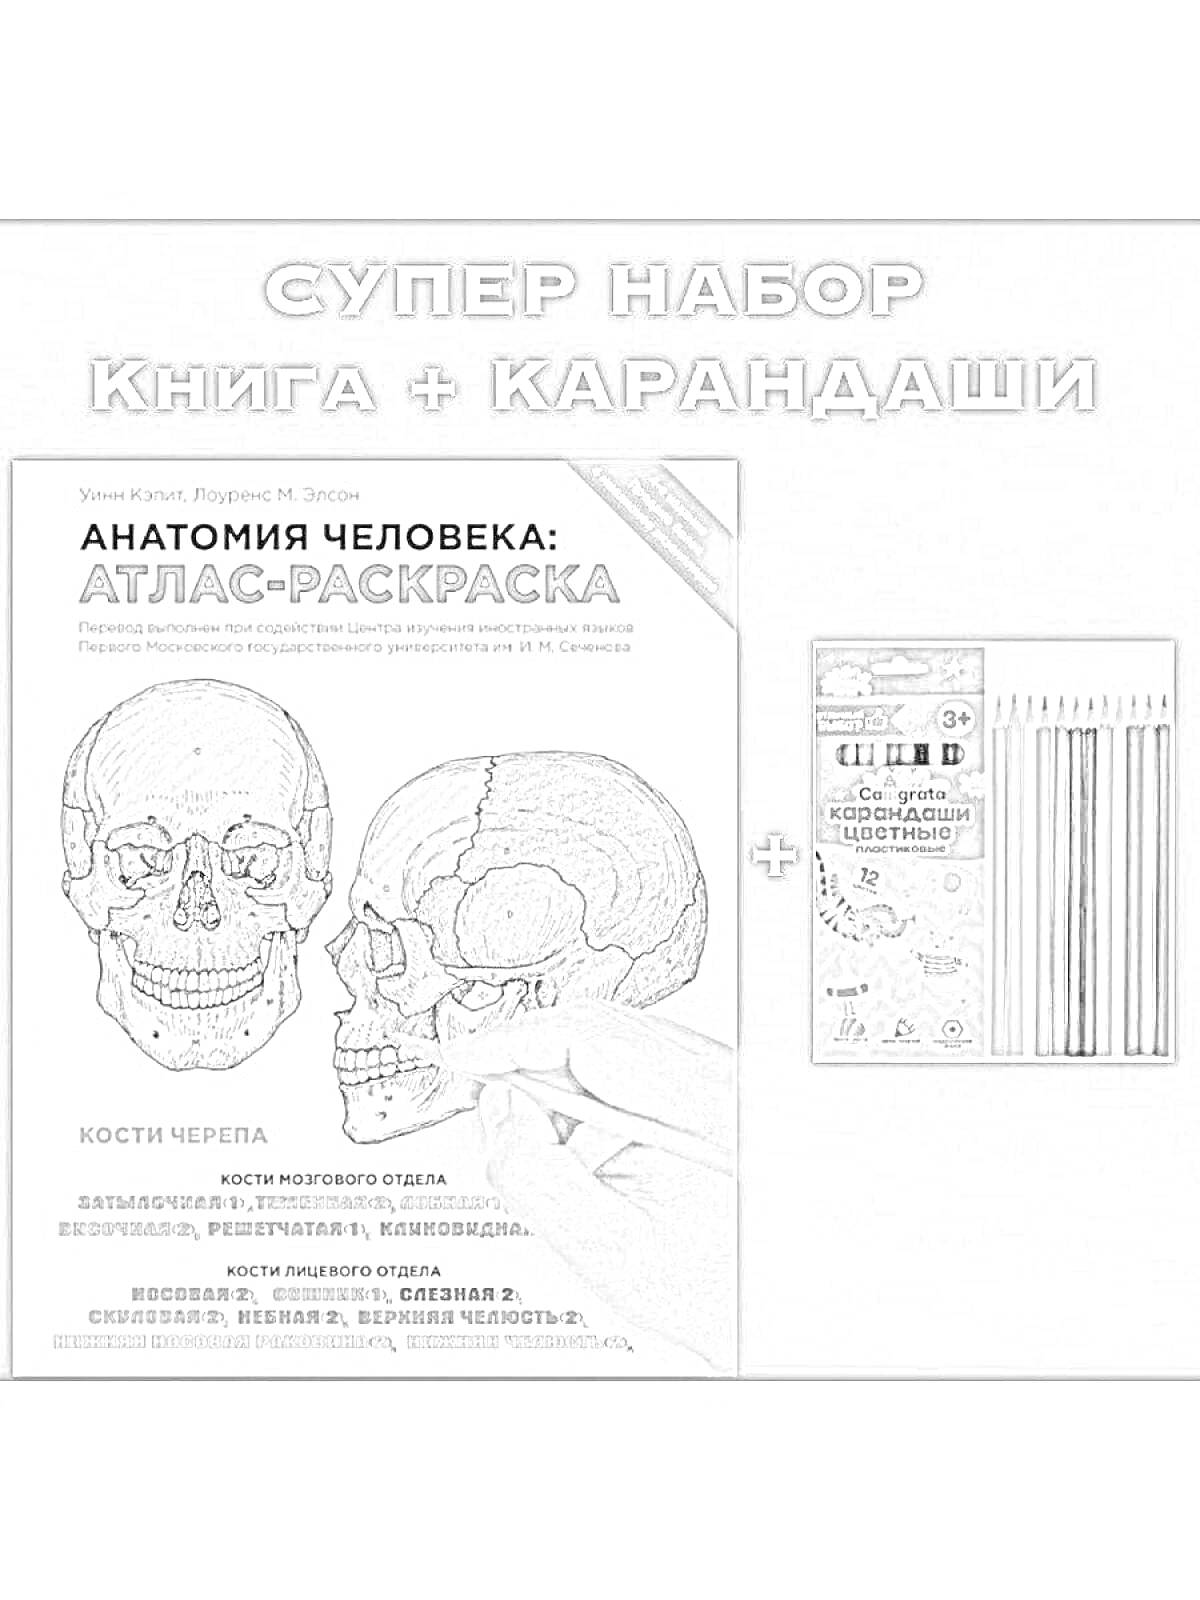 Раскраска Супер набор книга + карандаши: Анатомия человека: атлас-раскраска. Изображения черепов и набор цветных карандашей.